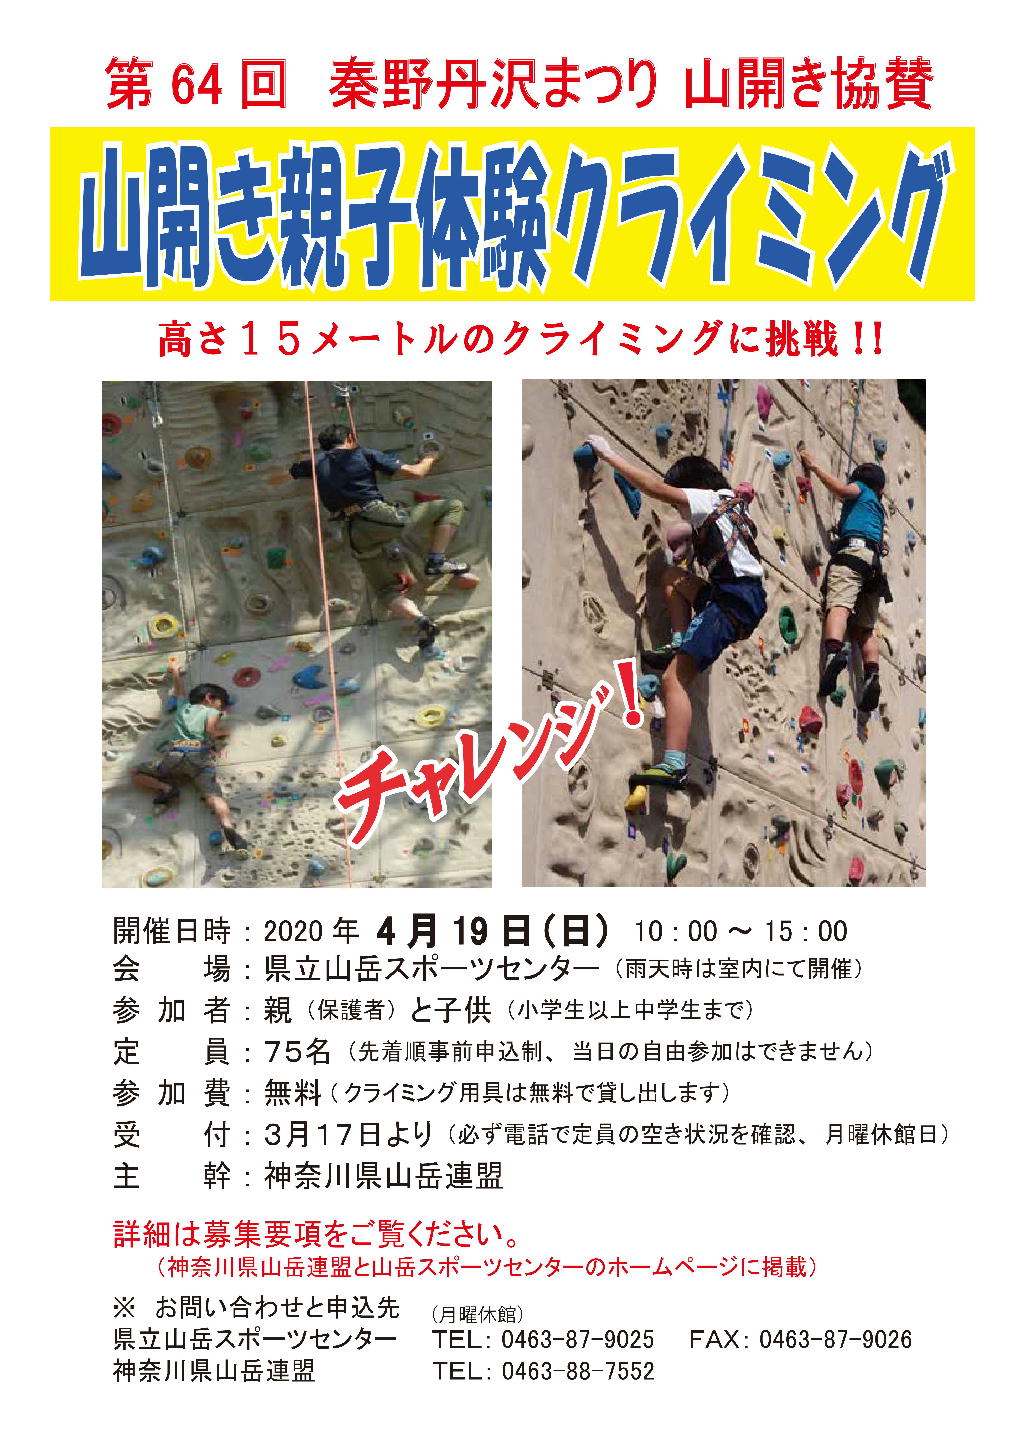 2020 oyako climbing chirashi s